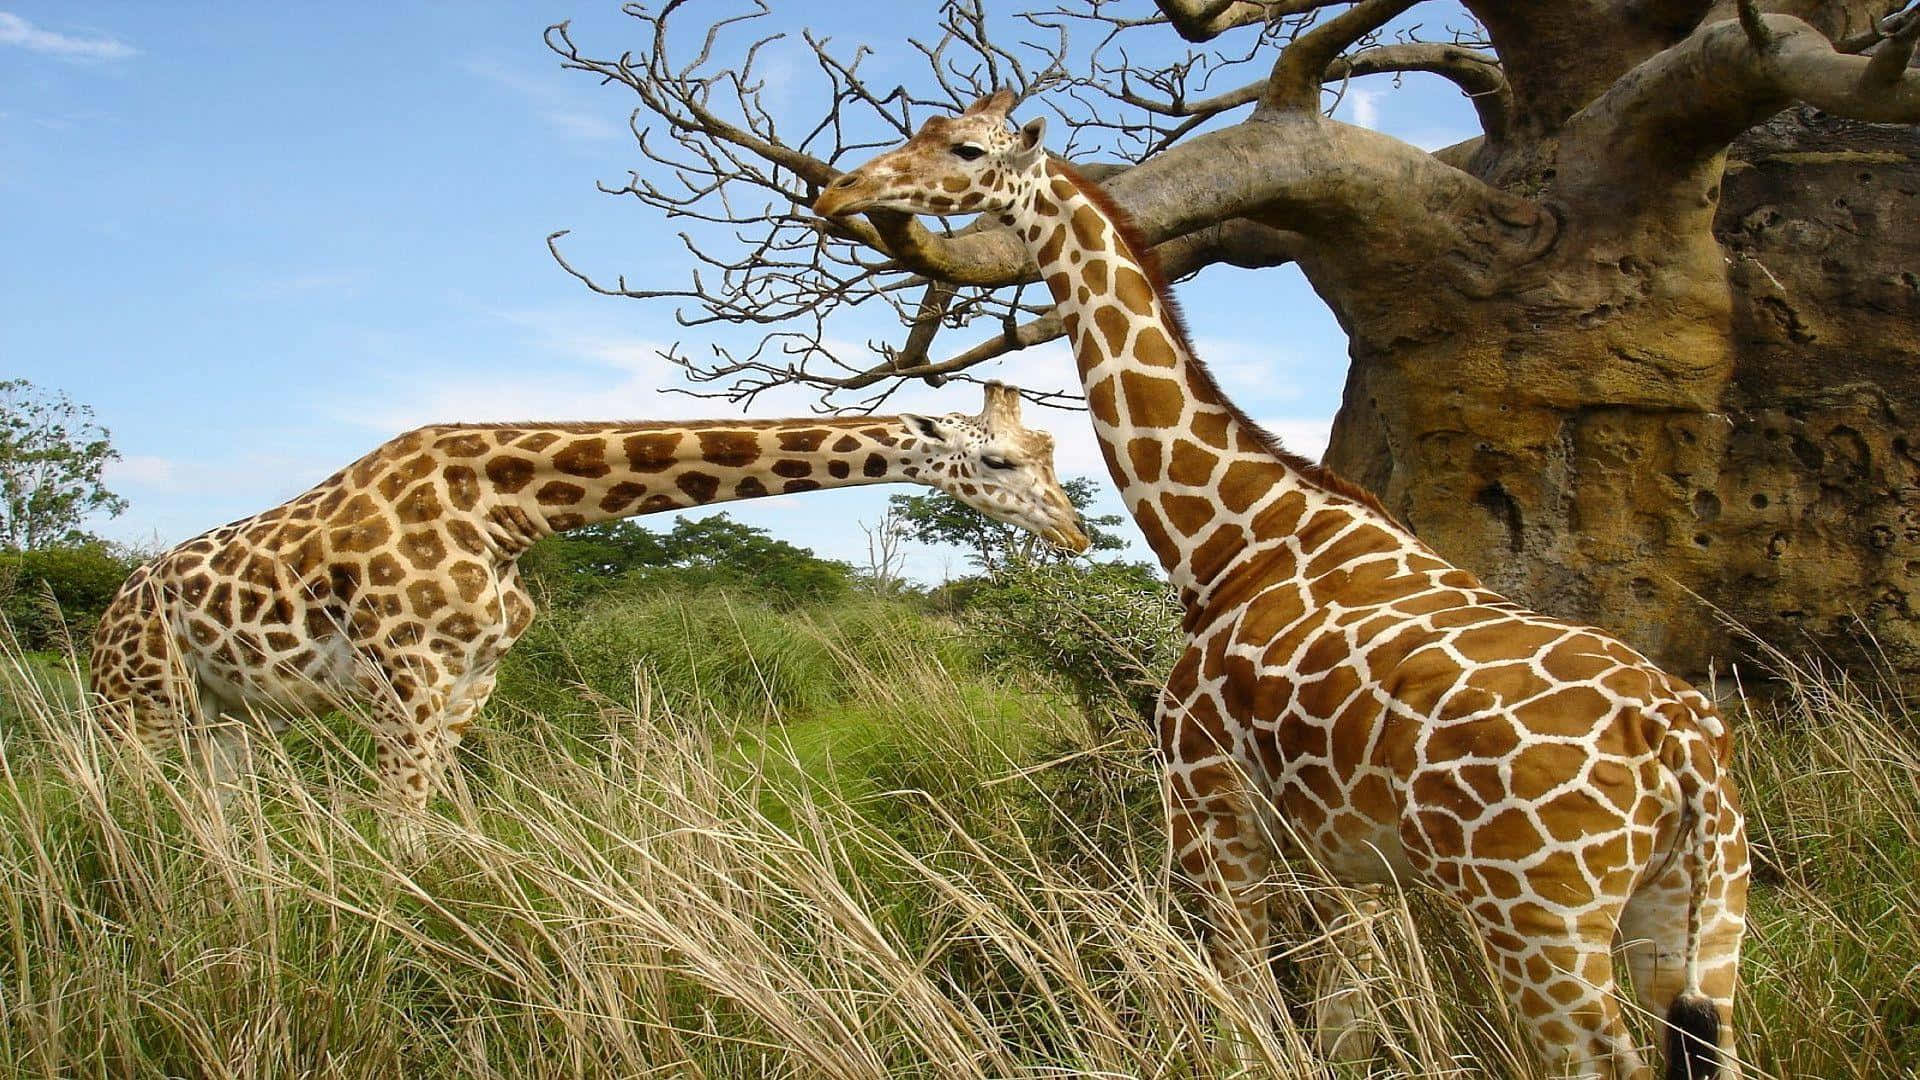 Immaginedi Animali Selvatici: Giraffa In Piedi Sull'erba Vicino A Un Albero.